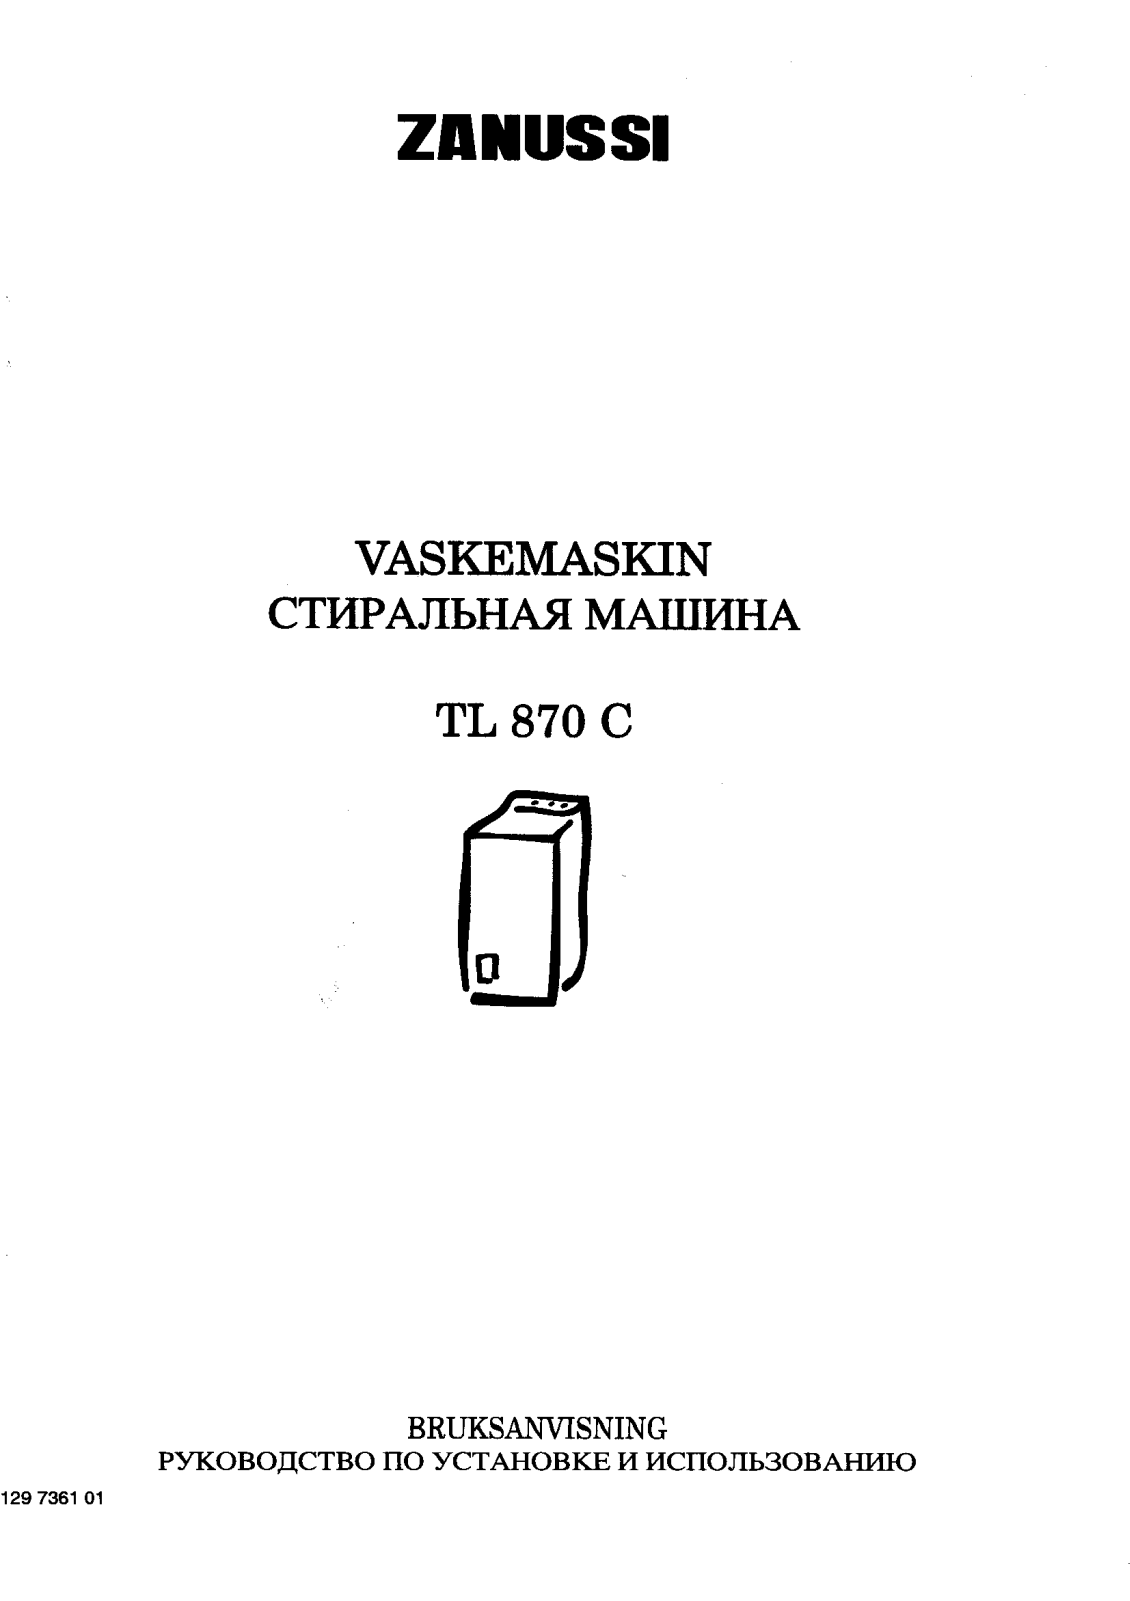 Zanussi TL 870 C User Manual